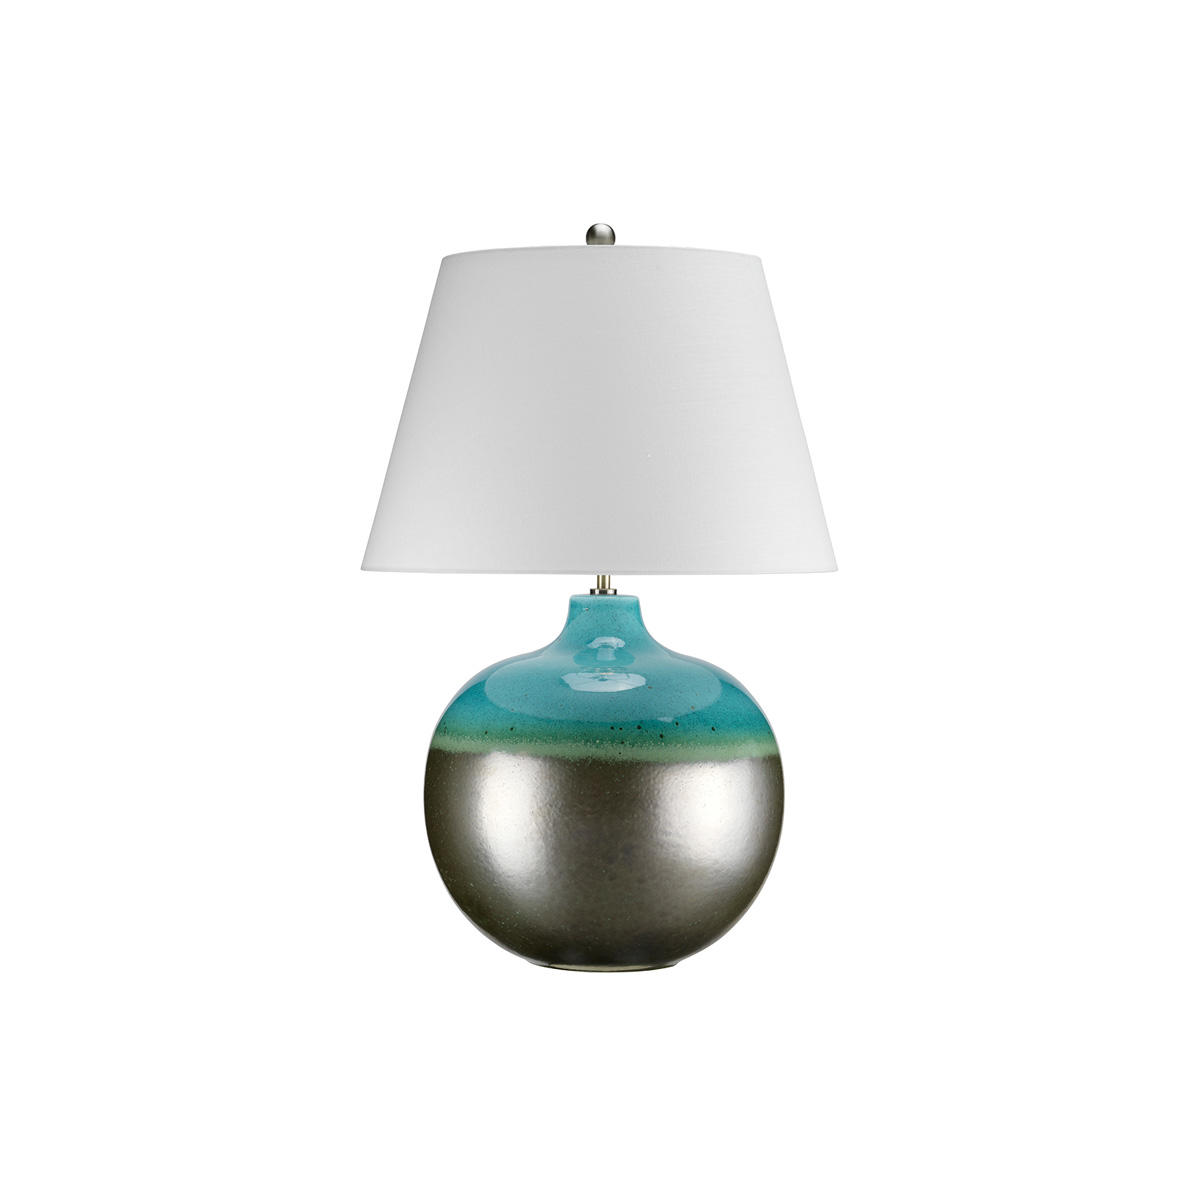 Настольная лампа LAGUNA-TL-LRG, Настольные лампы Классический/Традиционный | Керамика | Прихожая, спальня, гостиная, столовая.